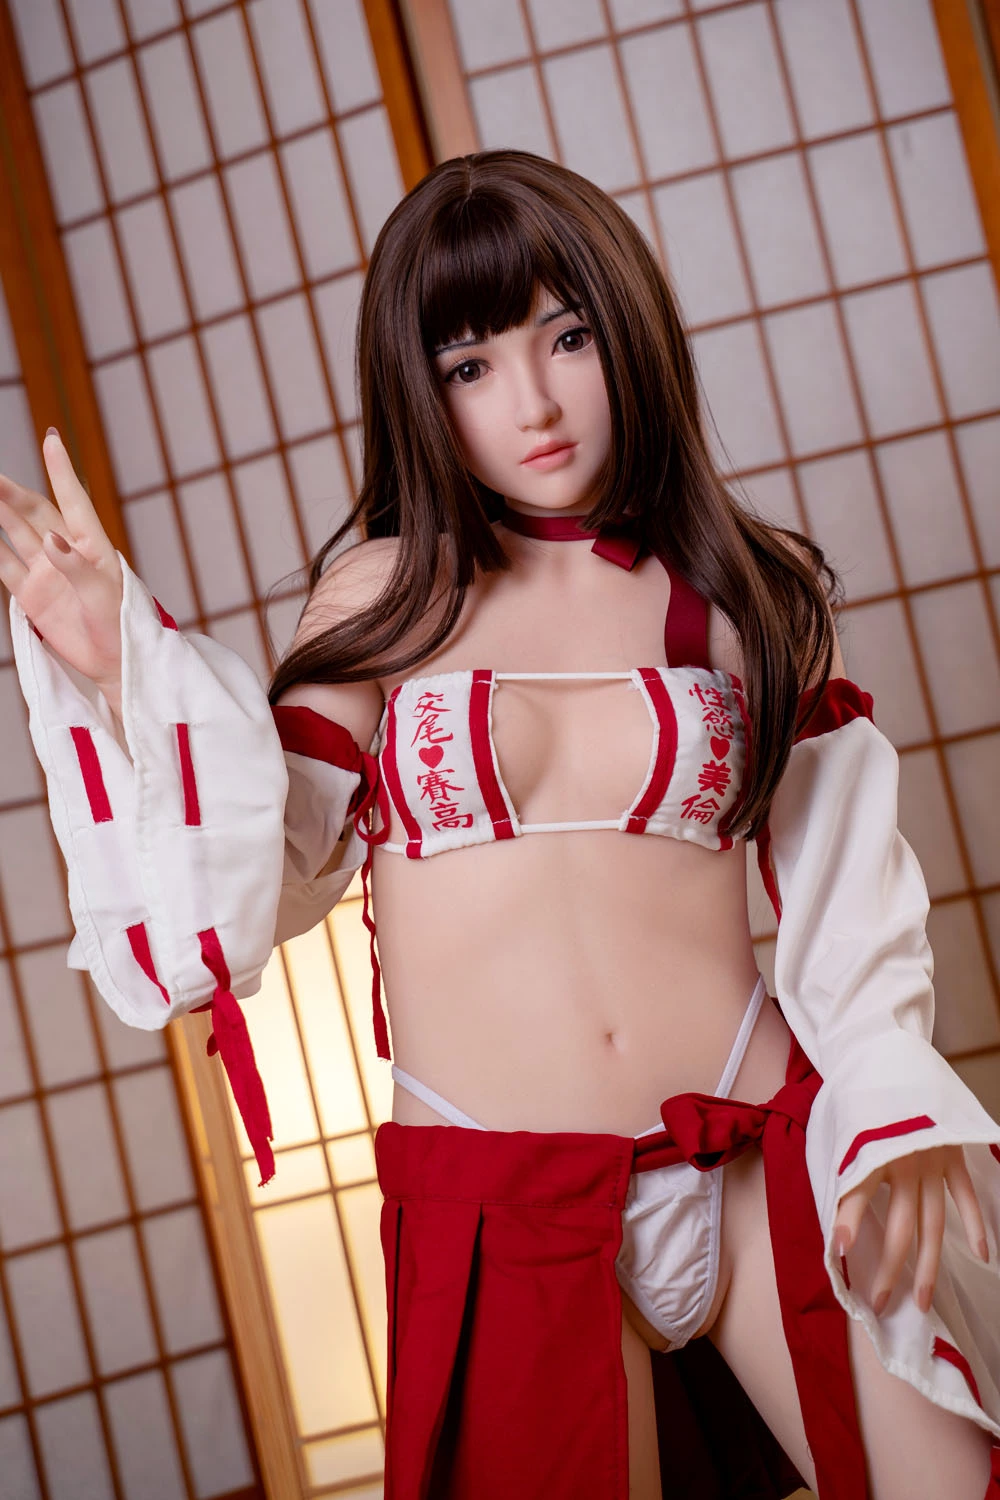 Japanese Girl Sex Doll